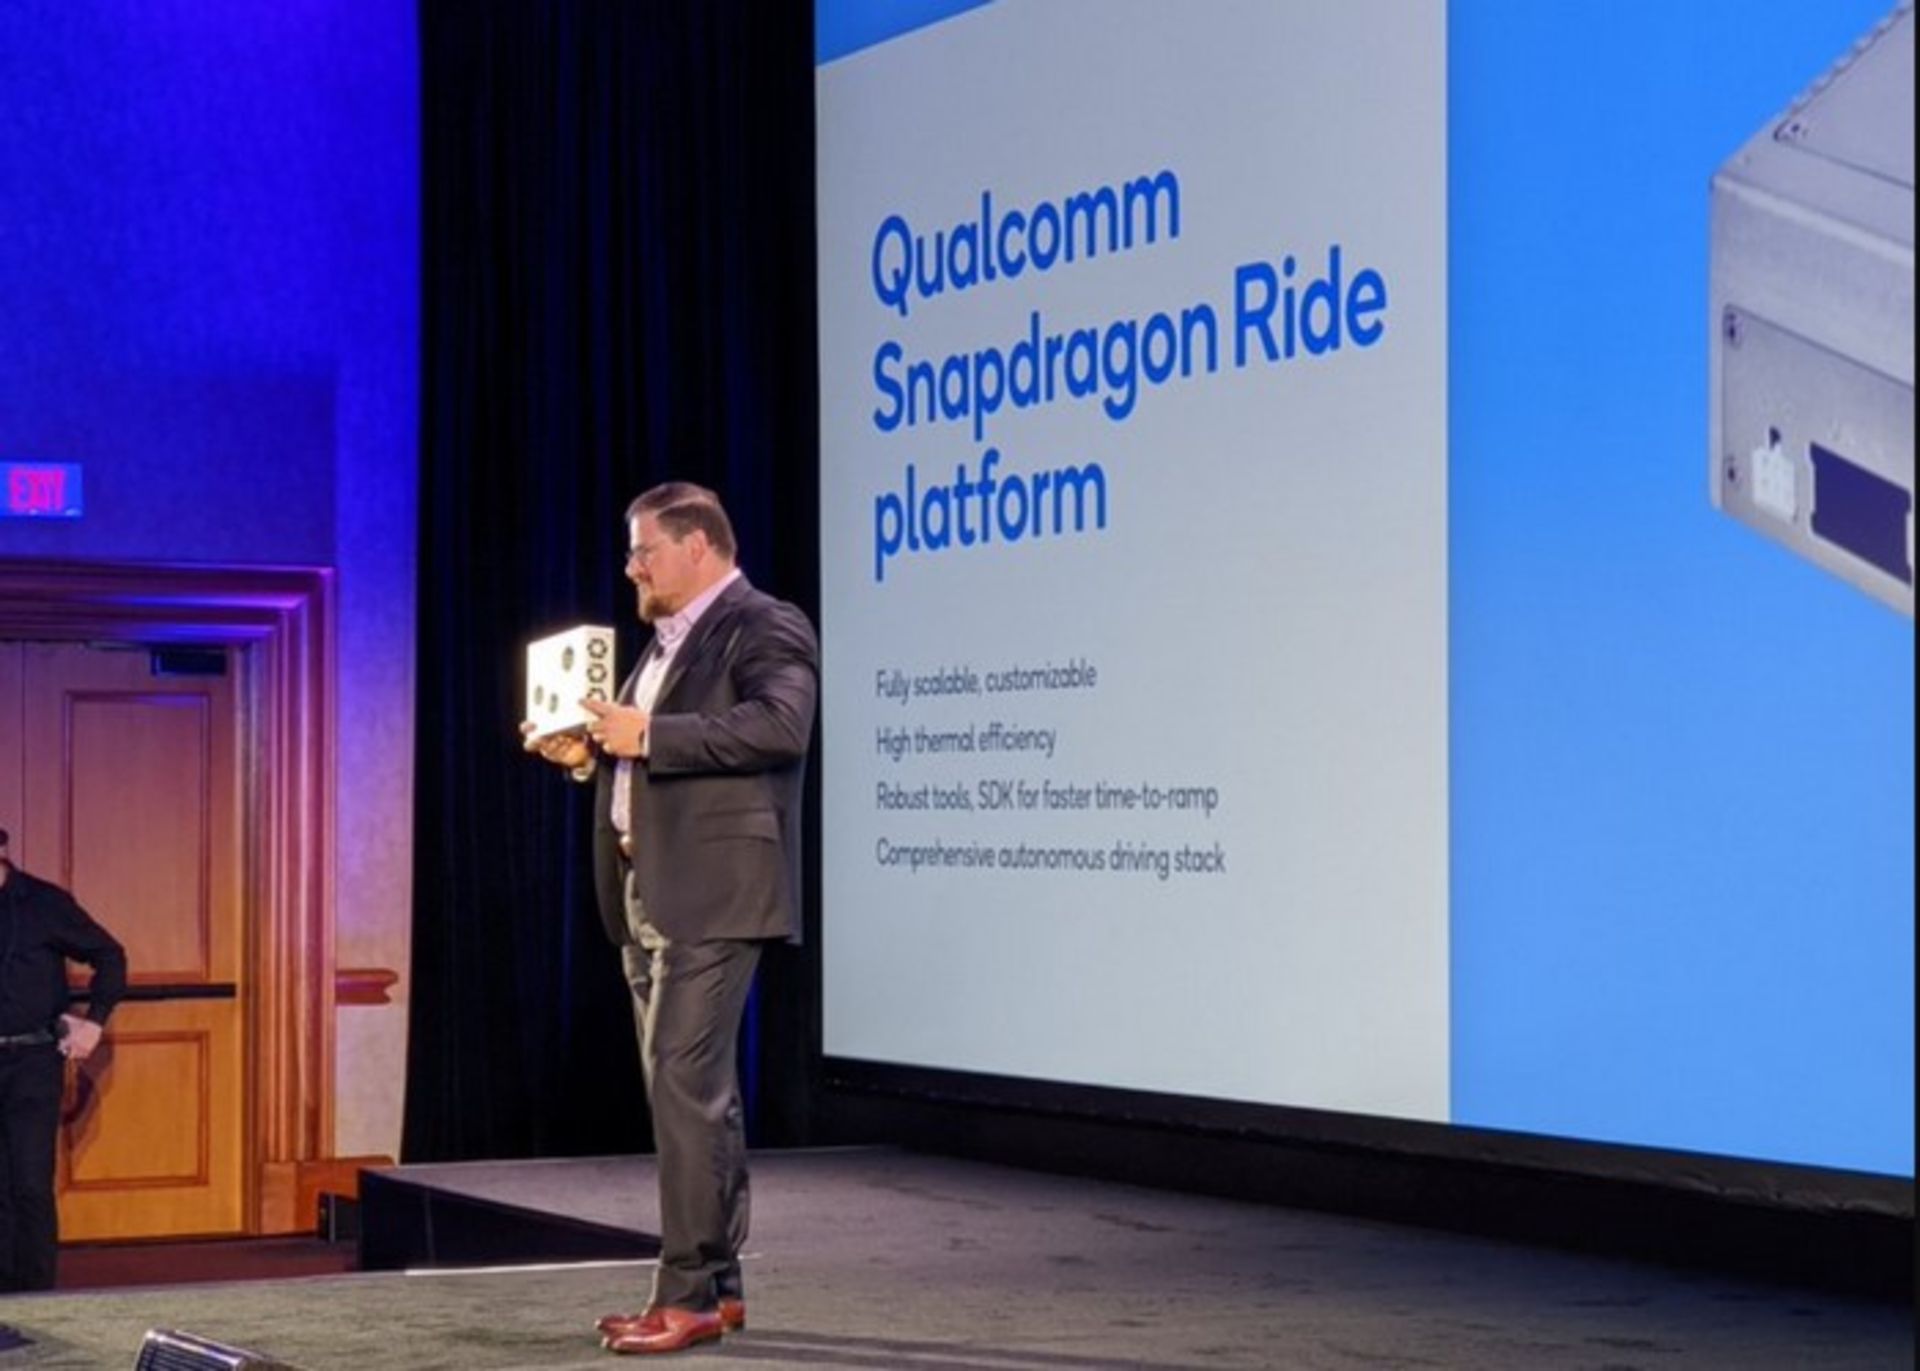 مرجع متخصصين ايران snapdragon-ride-platform